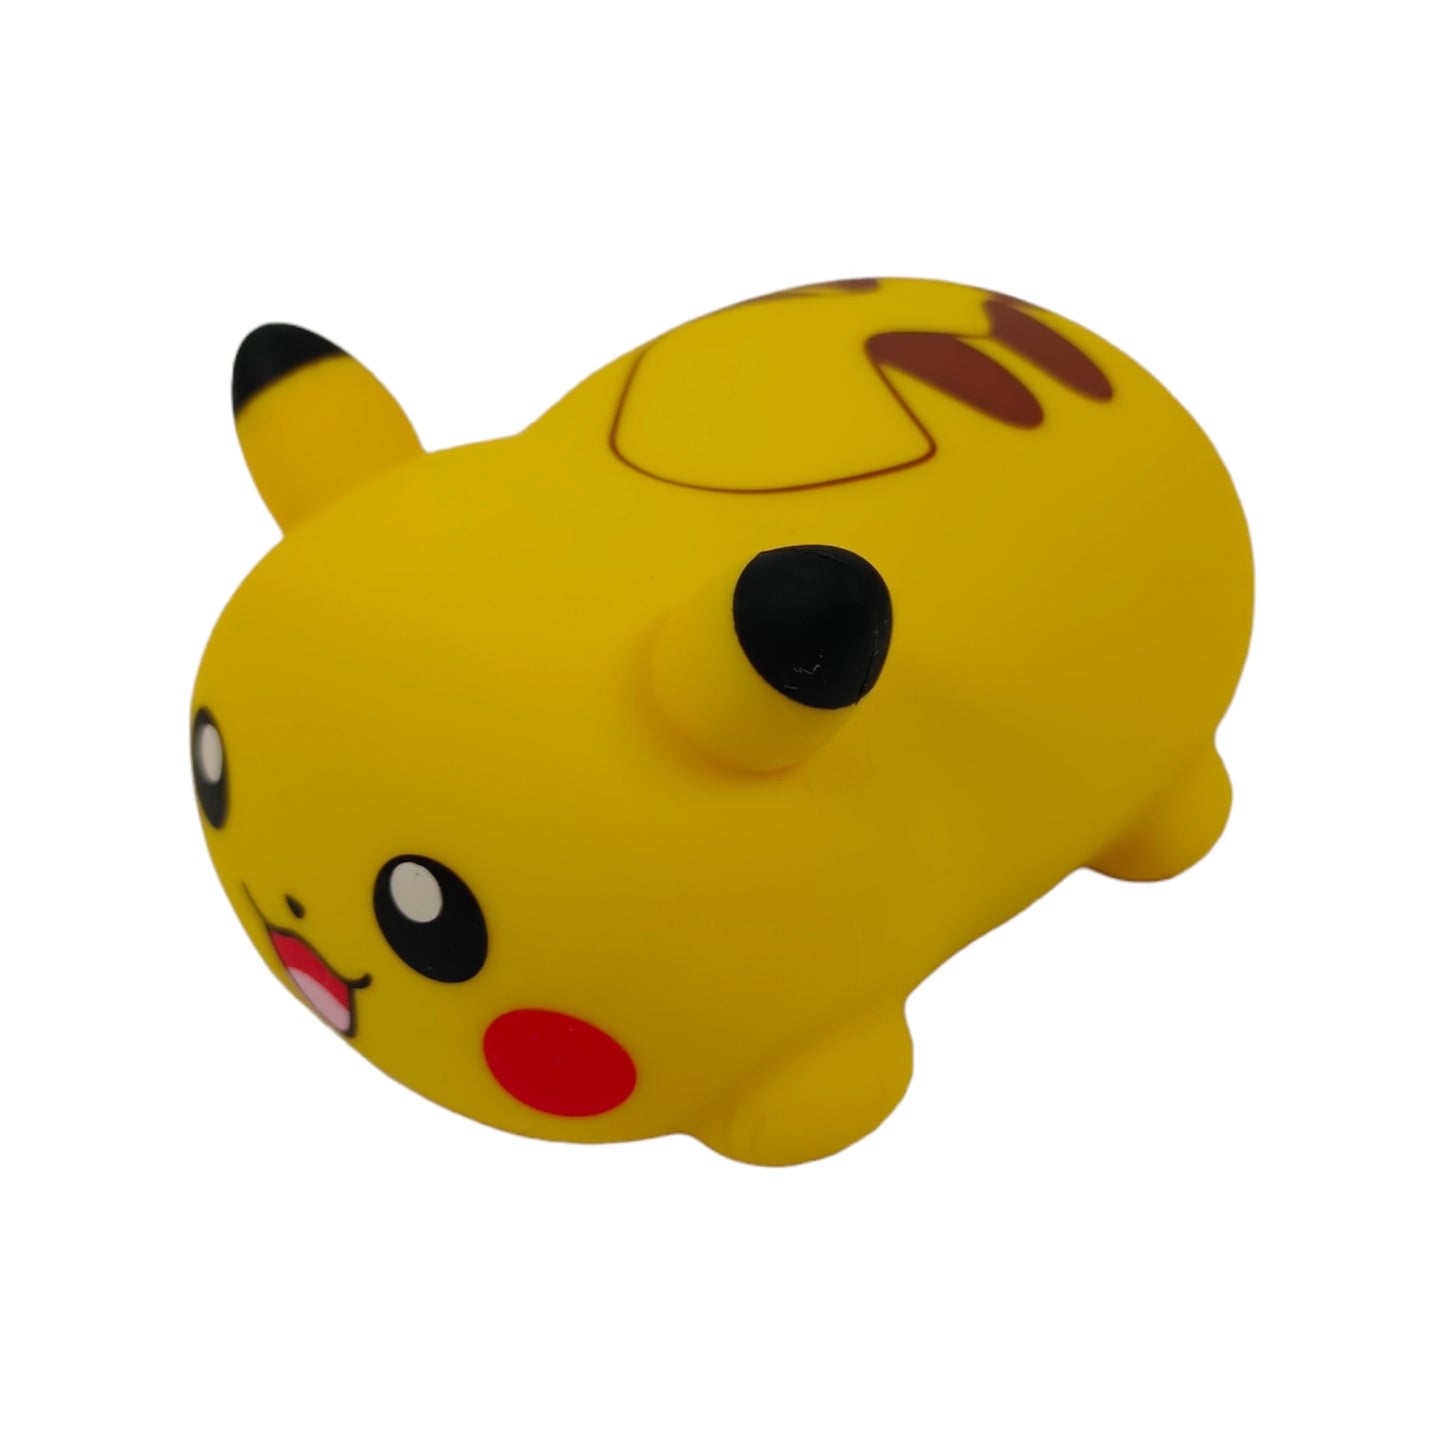 Ensemble complet de 8 jouets DoReMiFa Pikachu